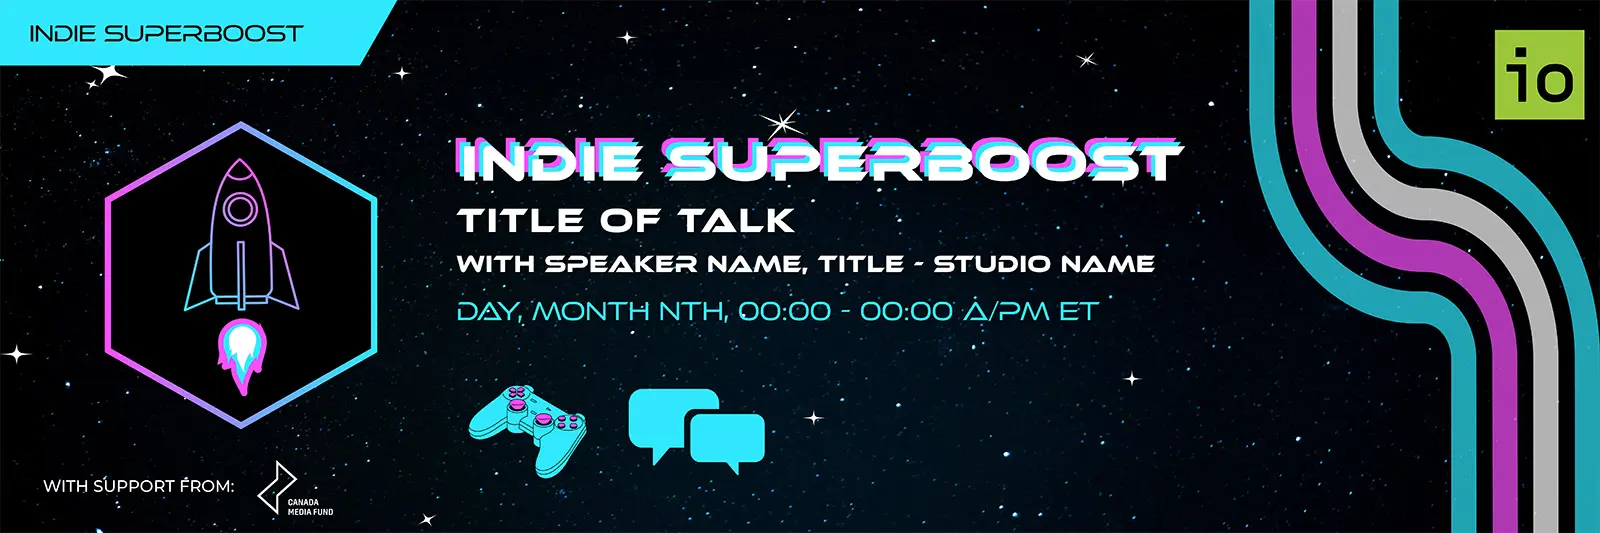 Indie Superboost Game Audio: With Cool Speaker